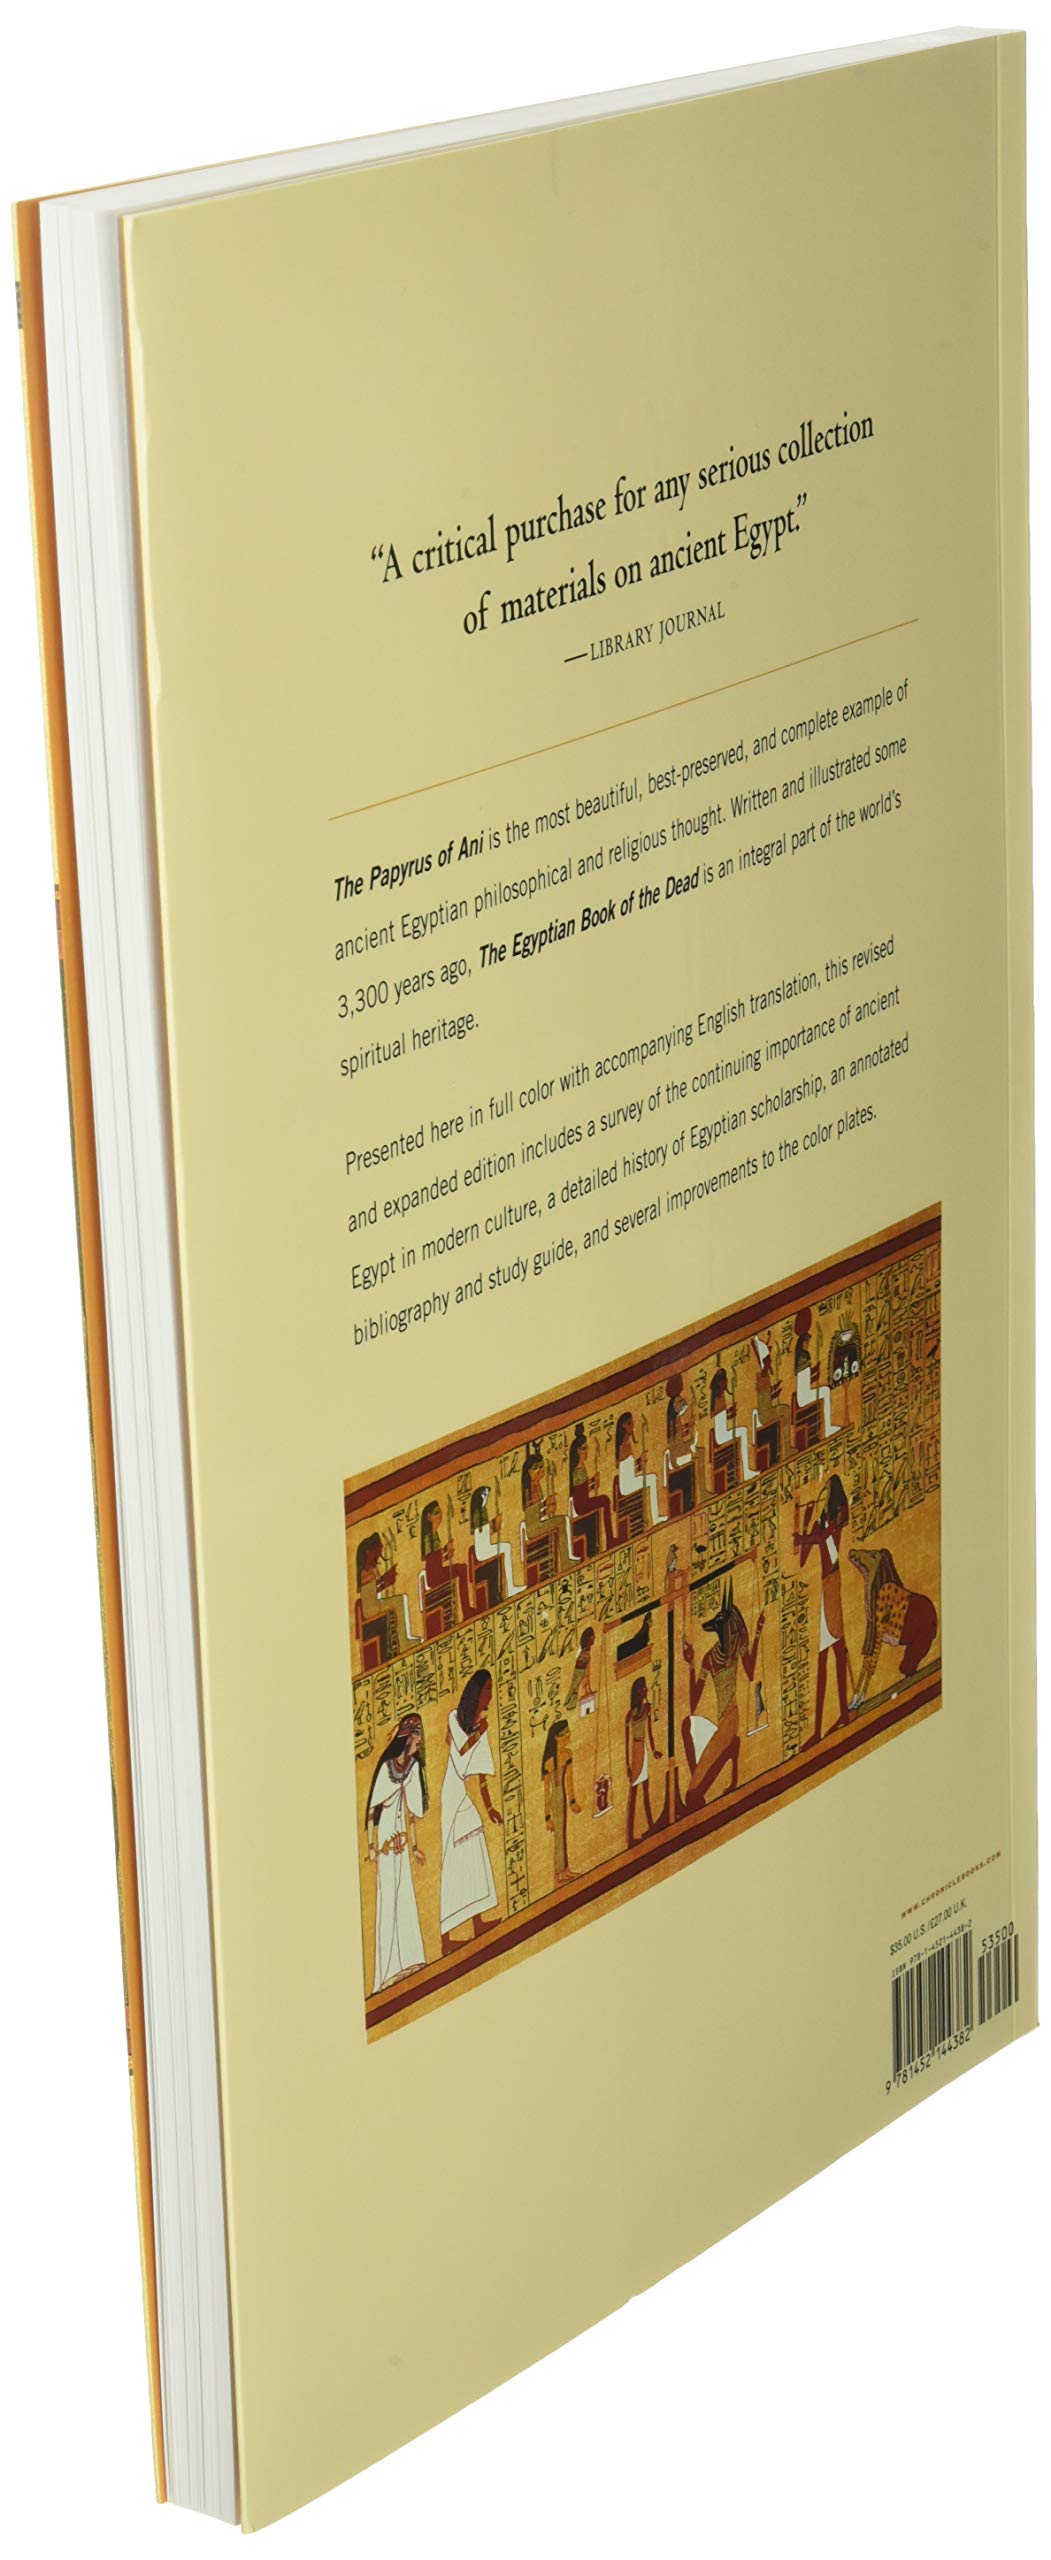 The Egyptian Book of the Dead: The Egyptian Book of the Dead là một tác phẩm văn học cổ đại đầy bí ẩn và thu hút sự chú ý của các nhà nghiên cứu cổ xưa trên toàn thế giới. Tác phẩm này không chỉ là một trong những bộ sách cổ đại quan trọng nhất của dân tộc Ai Cập, mà nó còn là một tài liệu quý giá giúp chúng ta hiểu rõ hơn về lịch sử, văn hóa và tôn giáo của người Ai Cập cổ đại.